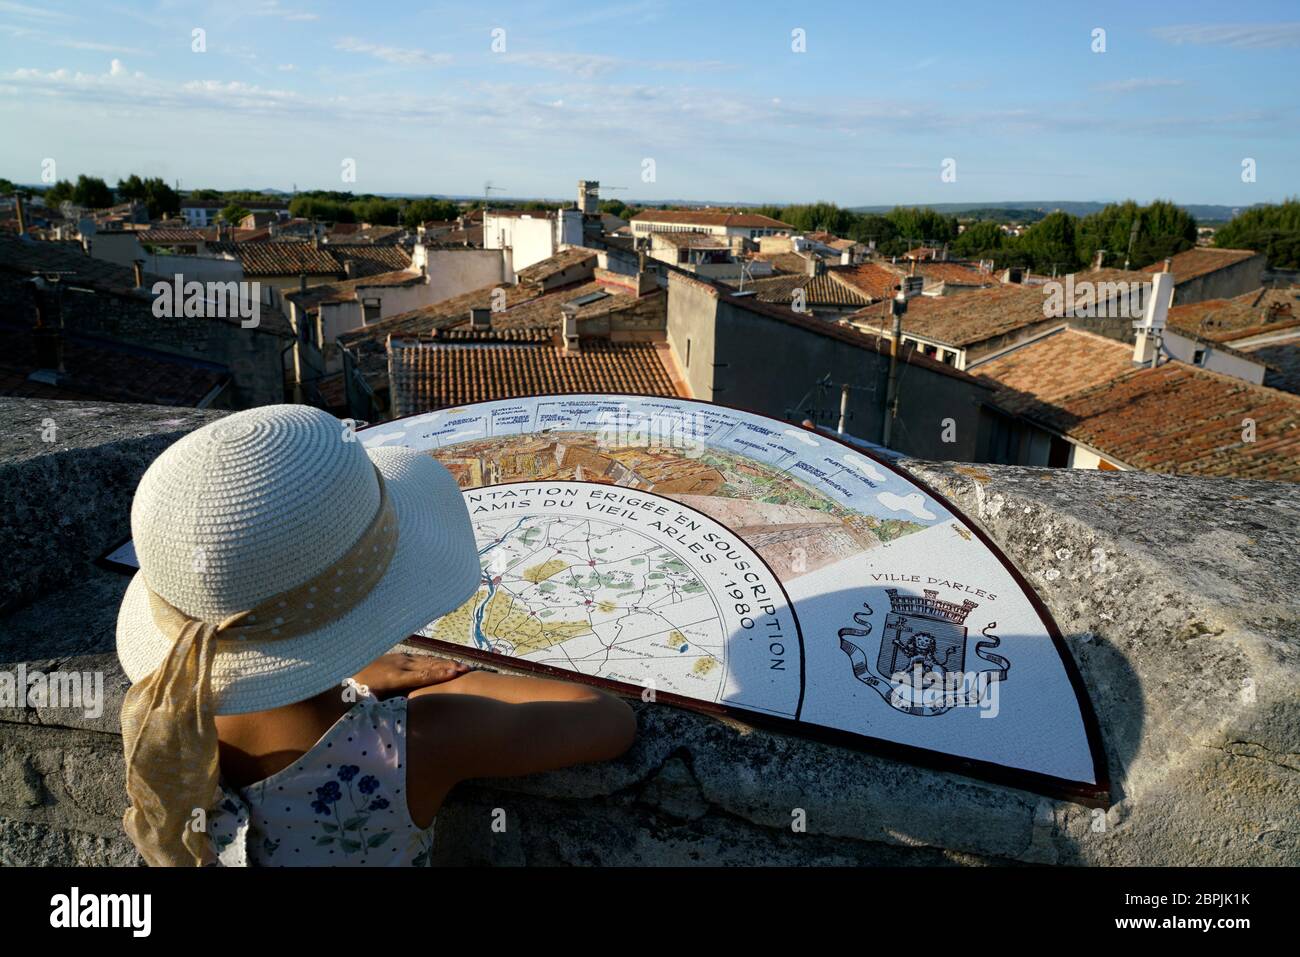 Une jeune fille avec chapeau devant la carte d'orientation sur un mur en pierre surplombe la ville d'Arles.Bouches-du-rhône.Alpes-Côte d'Azur.France Banque D'Images